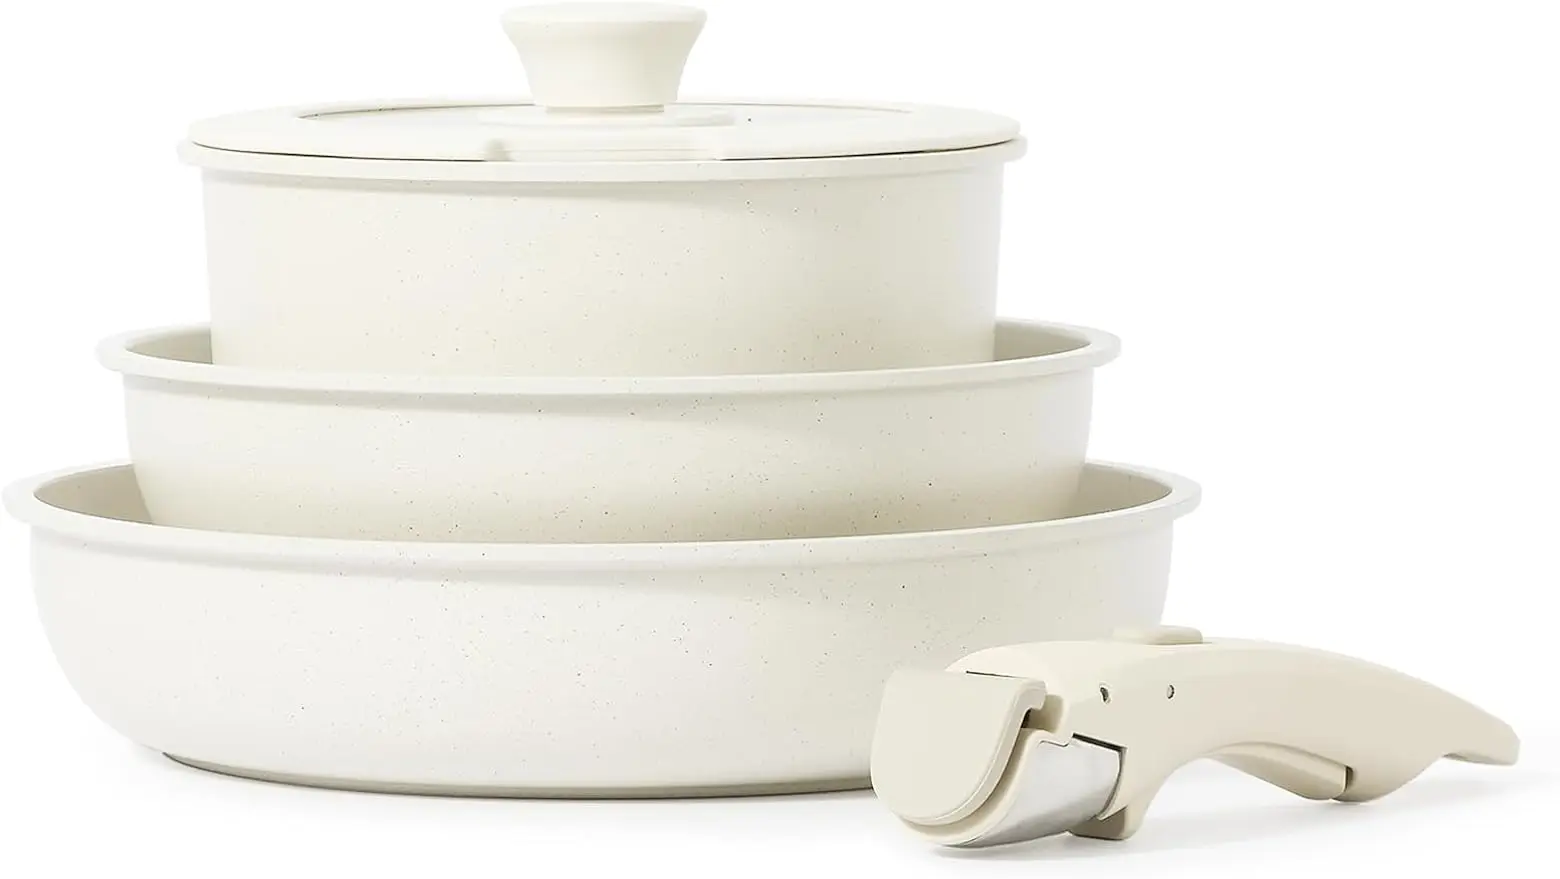 CAROTE 11pcs Pots and Pans Set, Nonstick Cookware Sets Detachable Handle 11  pcs Granite Set - AliExpress